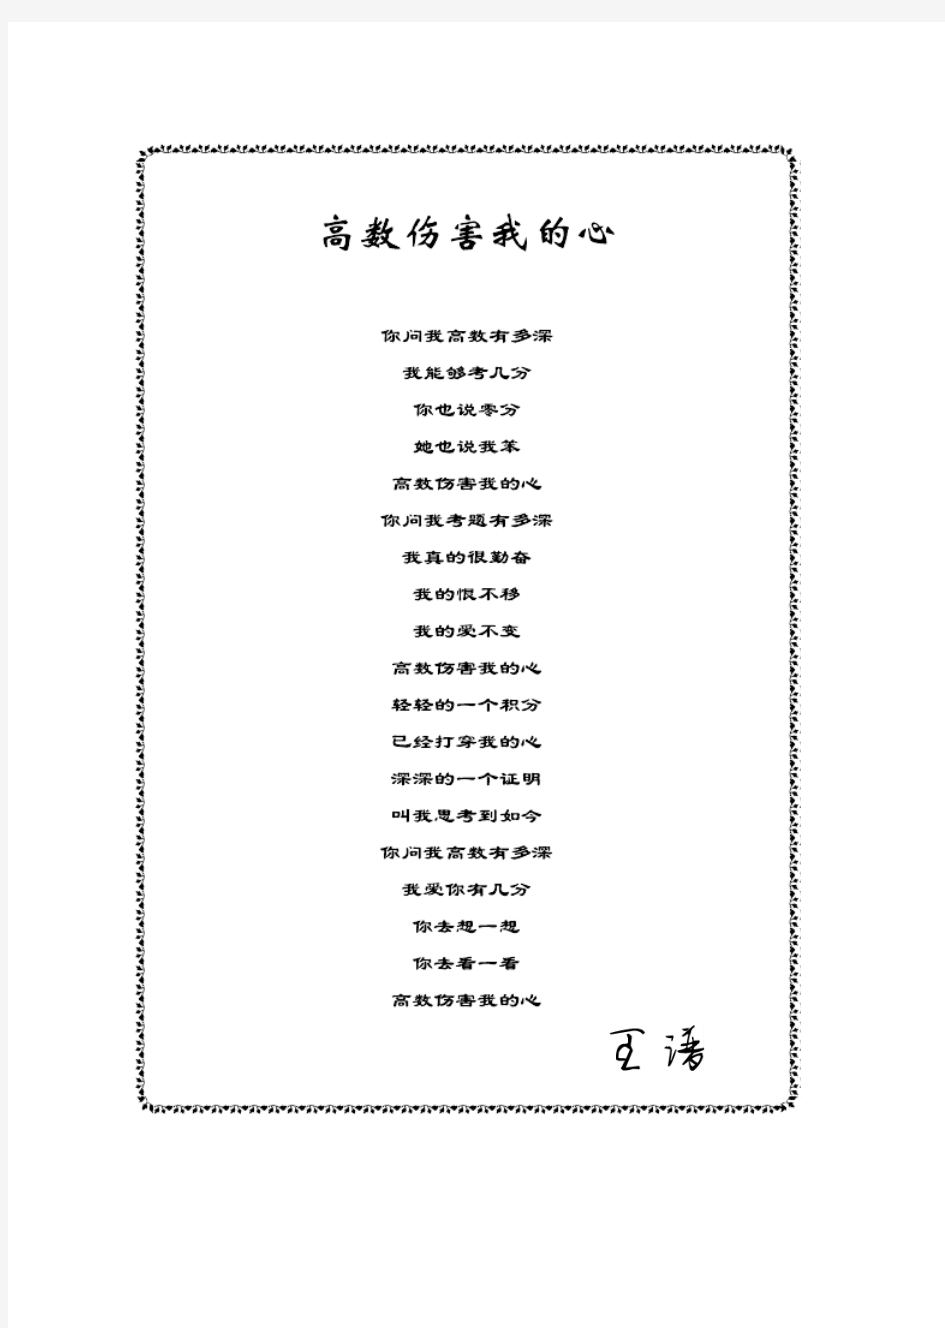 王谱17基础班高数讲义(上册)